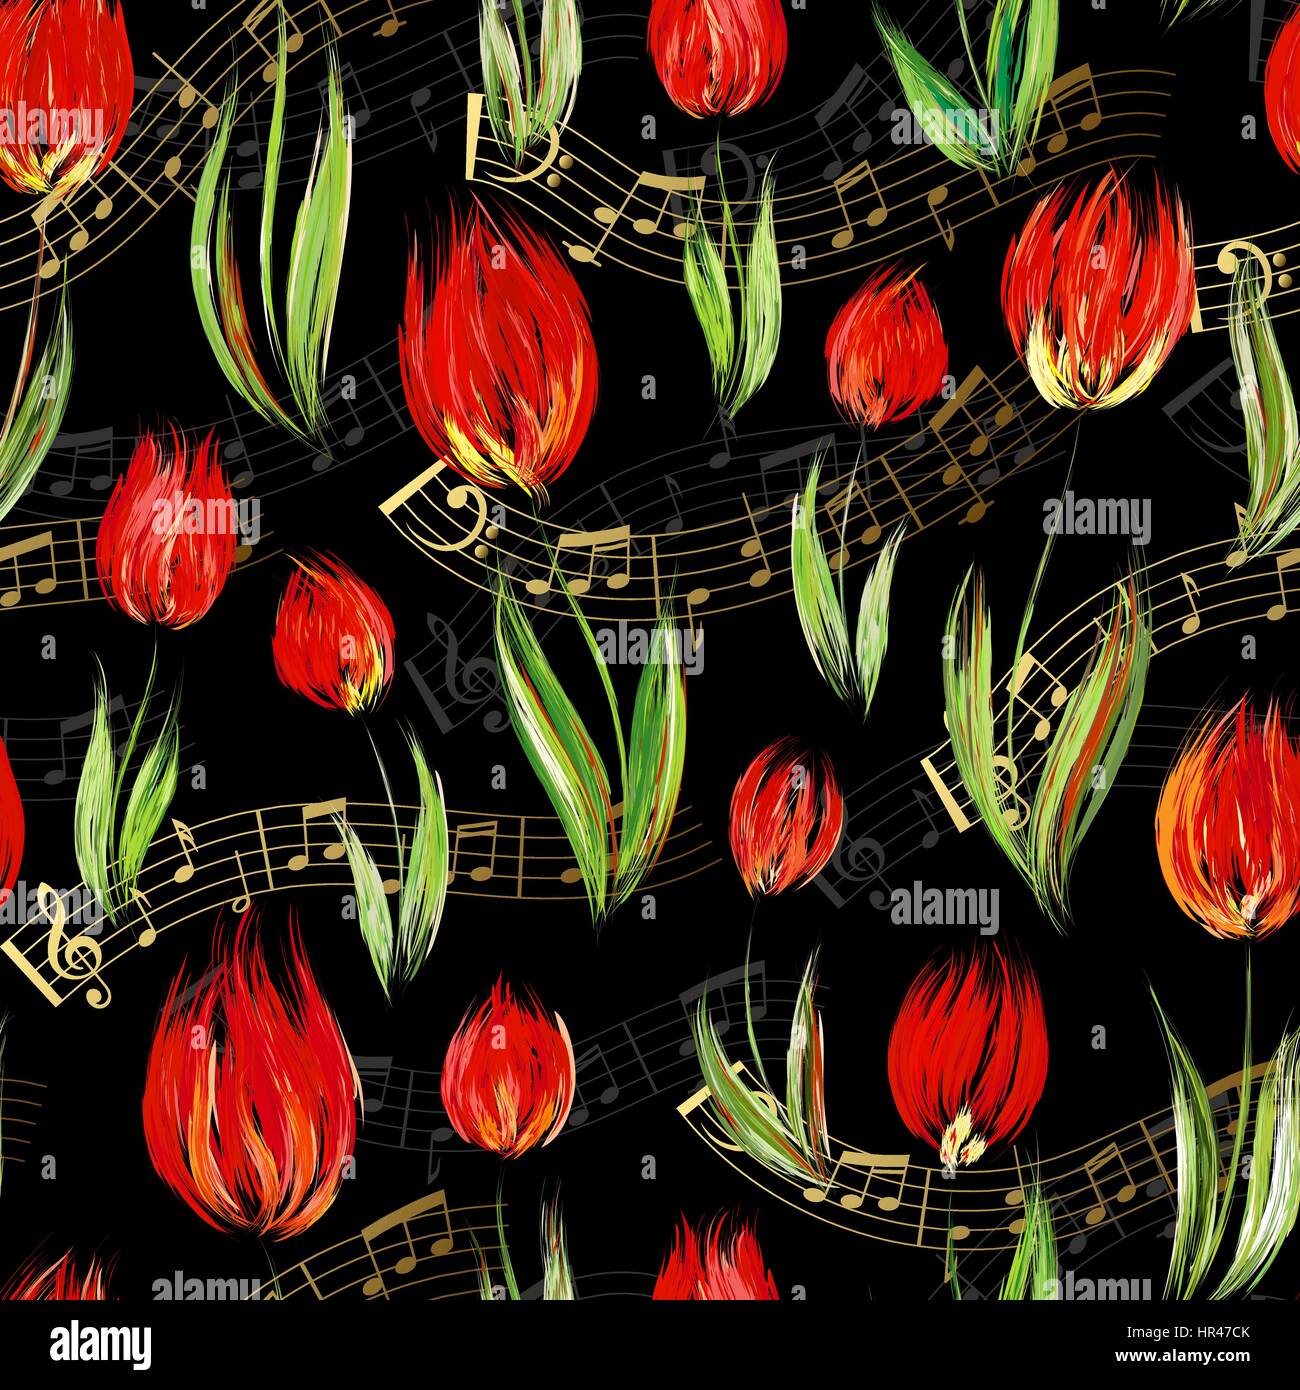 Motif transparent brillant avec de l'huile peinte en rouge fleurs tulipes fin notes d'or sur fond noir. Motif floral pour les invitations de mariage, cartes de vœux, Illustration de Vecteur